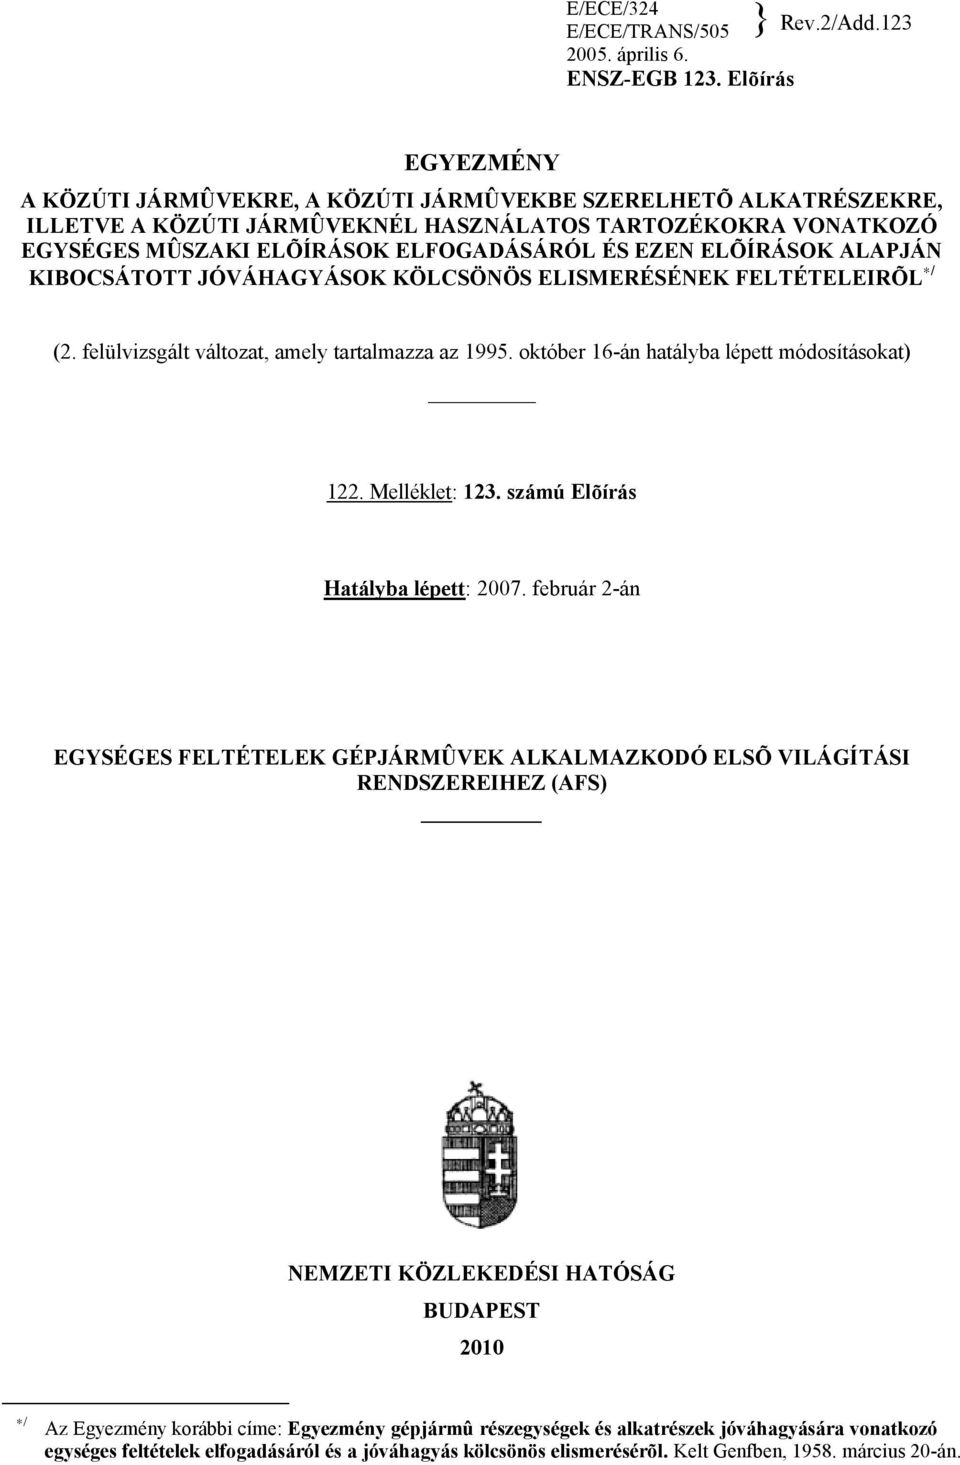 ELÕÍRÁSOK ALAPJÁN KIBOCSÁTOTT JÓVÁHAGYÁSOK KÖLCSÖNÖS ELISMERÉSÉNEK FELTÉTELEIRÕL */ (2. felülvizsgált változat, amely tartalmazza az 1995. október 16-án hatályba lépett módosításokat) 122.